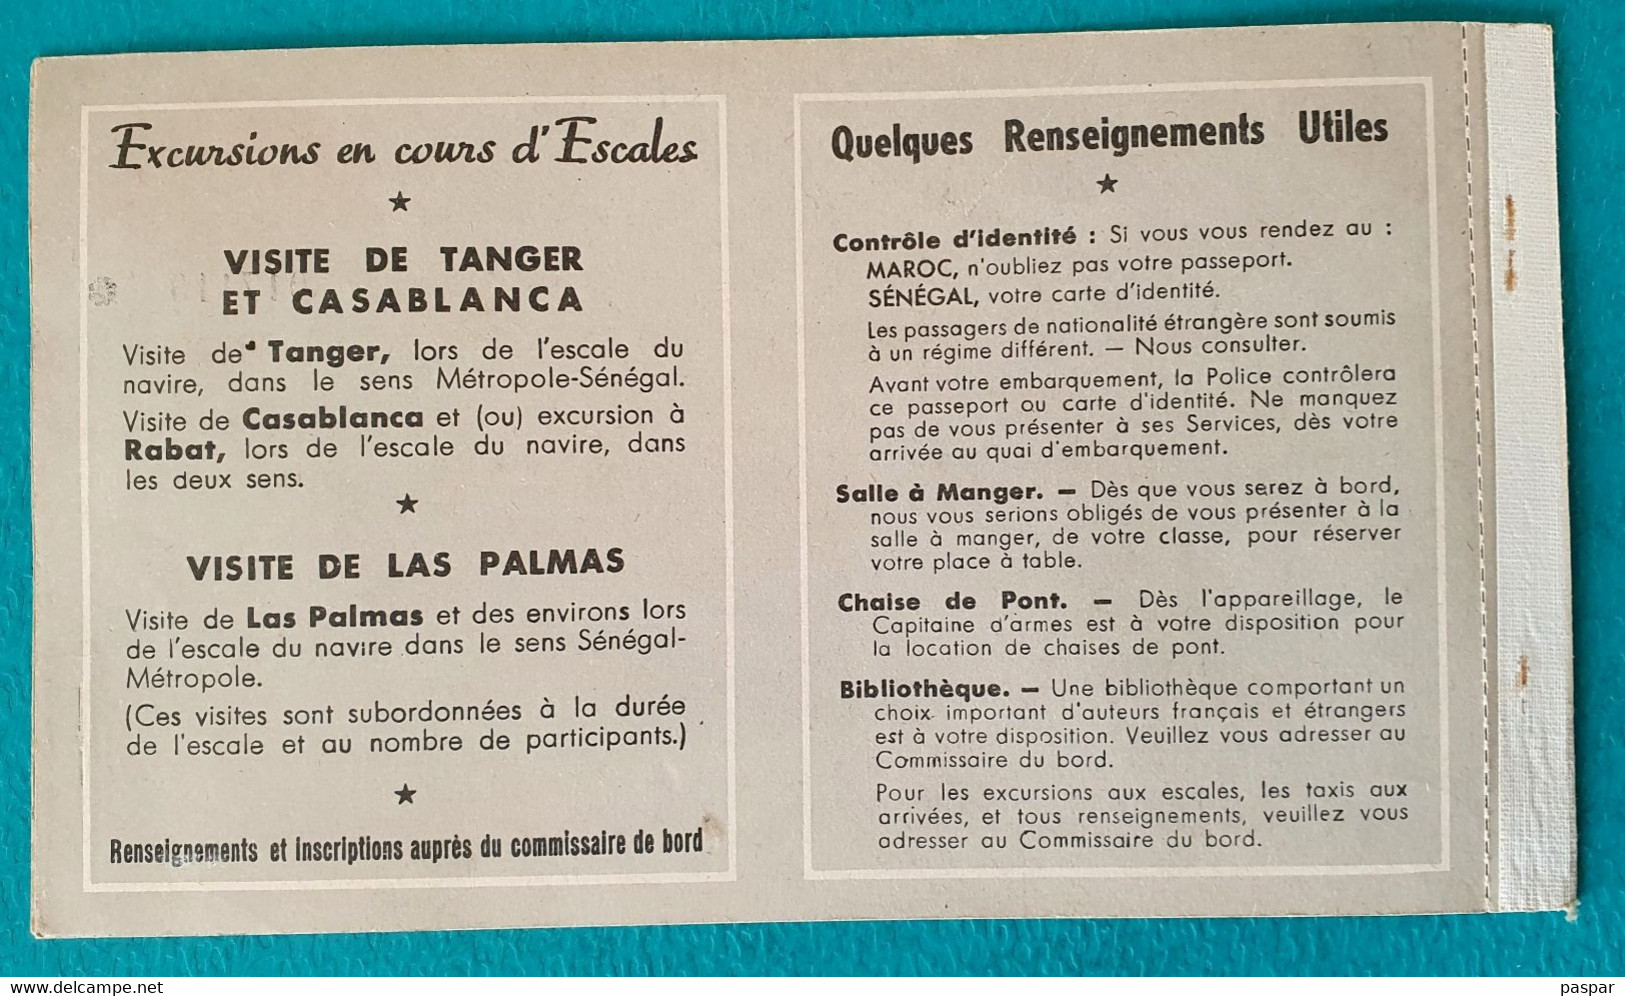 COMPAGNIE DE NAVIGATION PAQUET - BILLET DE PASSAGE ALLER SIMPLE DAKAR MARSEILLE 1ere CLASSE SENEGAL - 1956 - Wereld